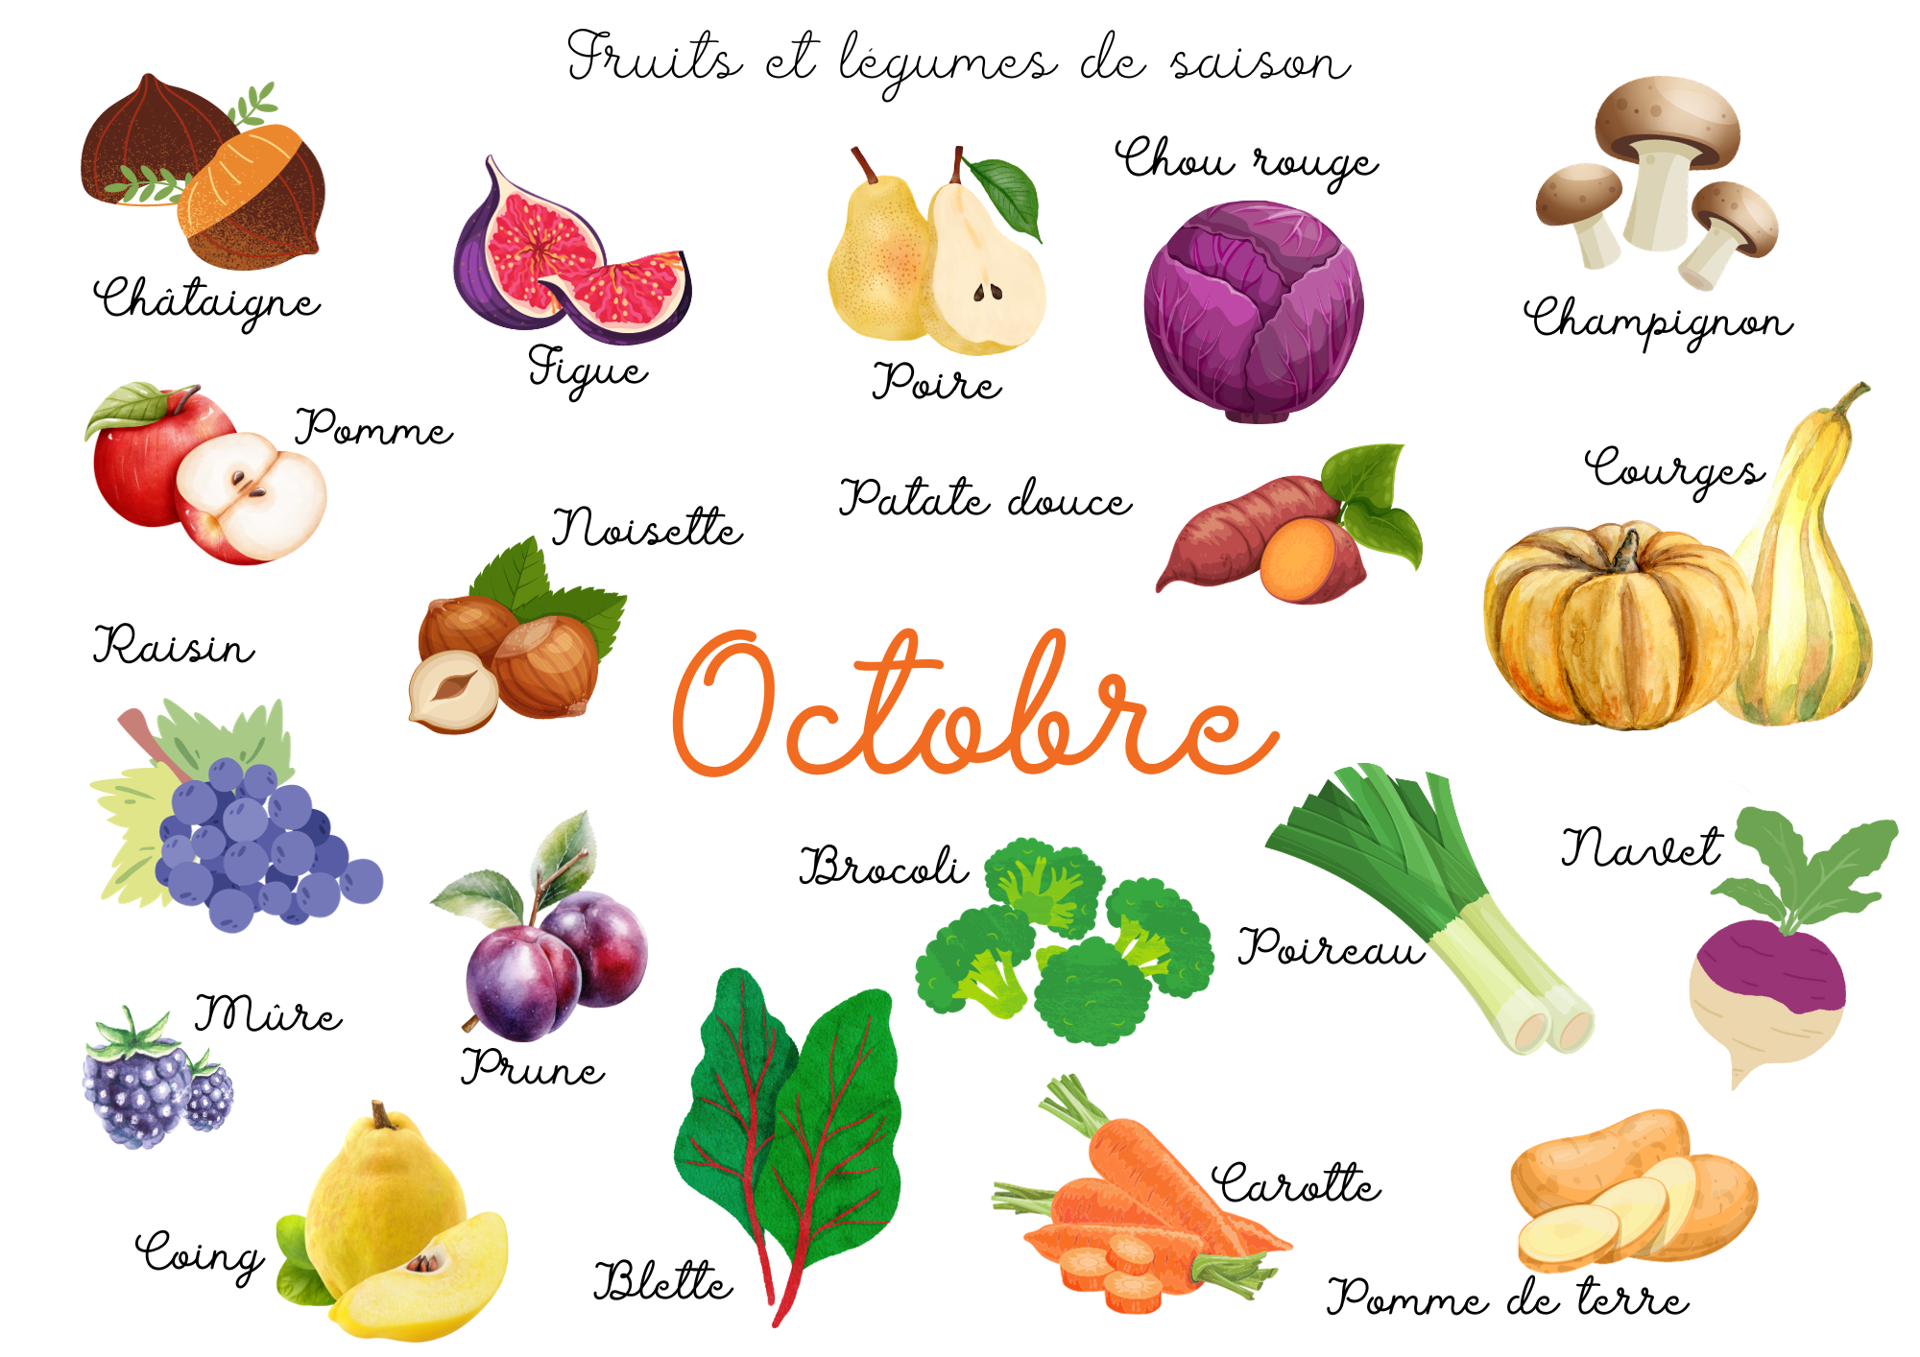 Les légumes et fruits d'octobre sont encore gorgés de soleil. 